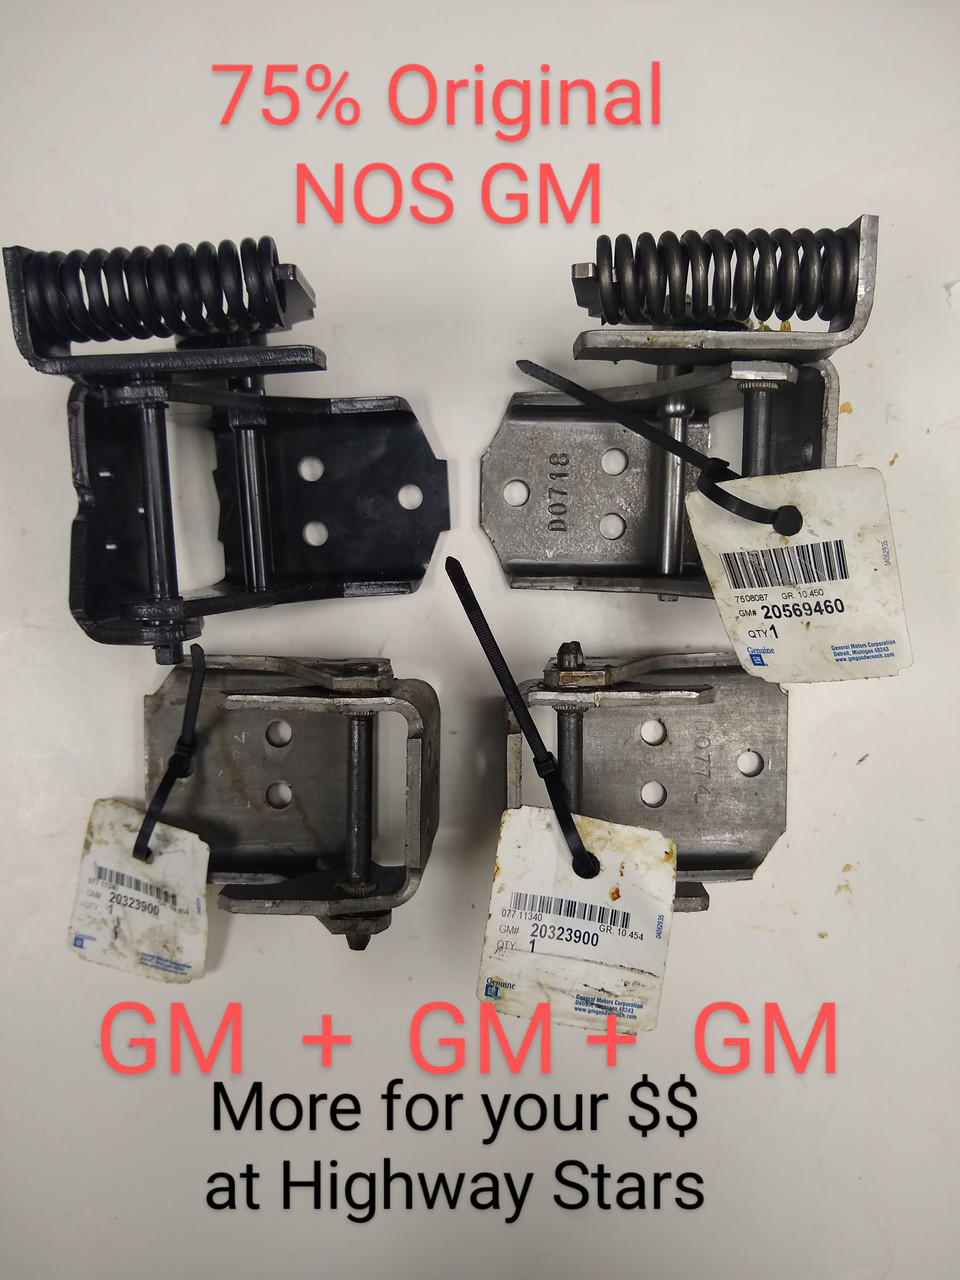 3 original GM door hinges 
Plus 1 Highway Stars door hinge for a set of 4 NOS GM #20323900, + NOS GM #20569460 Plus replacement for GM#20569461